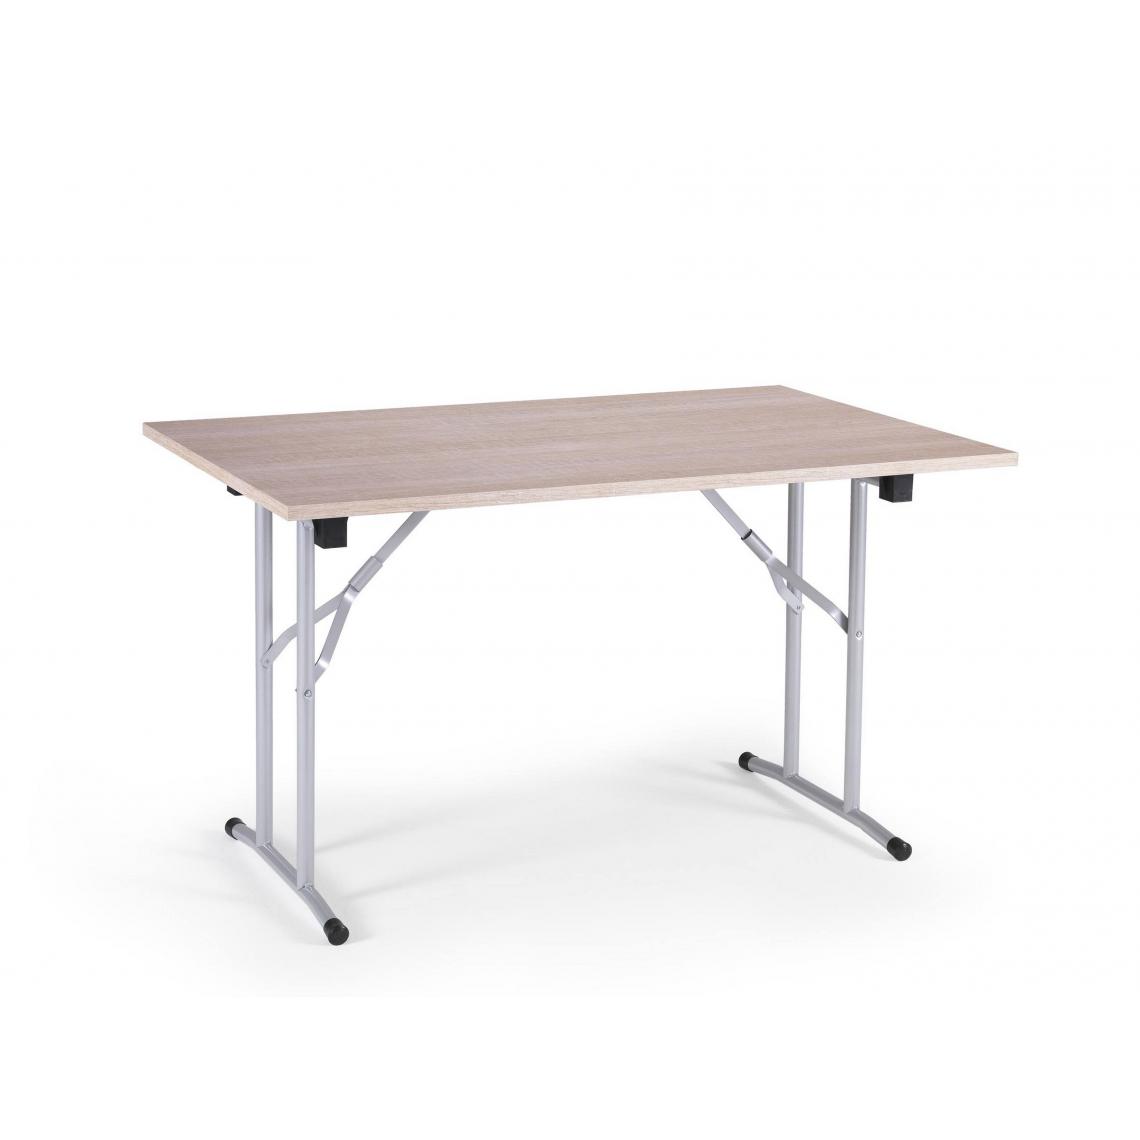 Alter - Table de camping avec pieds pliants en metal, 100% Made in Italy, Table d'exterieur moderne, 125x75h80 cm, couleur Chene et Gris - Tables à manger